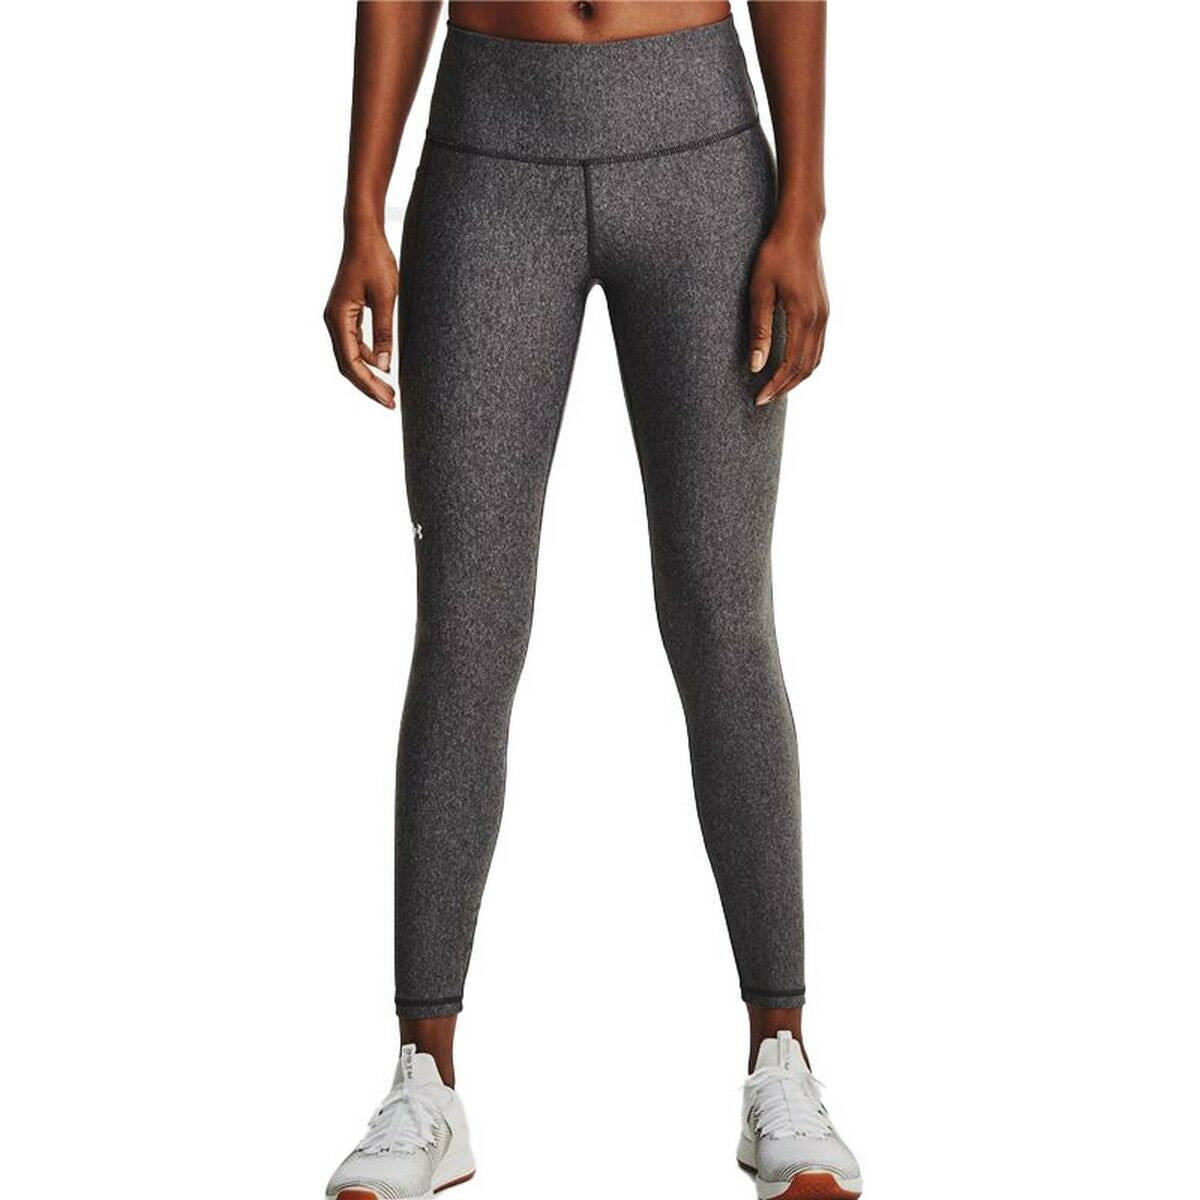 Sport leggings for Women Under Armour Dark grey